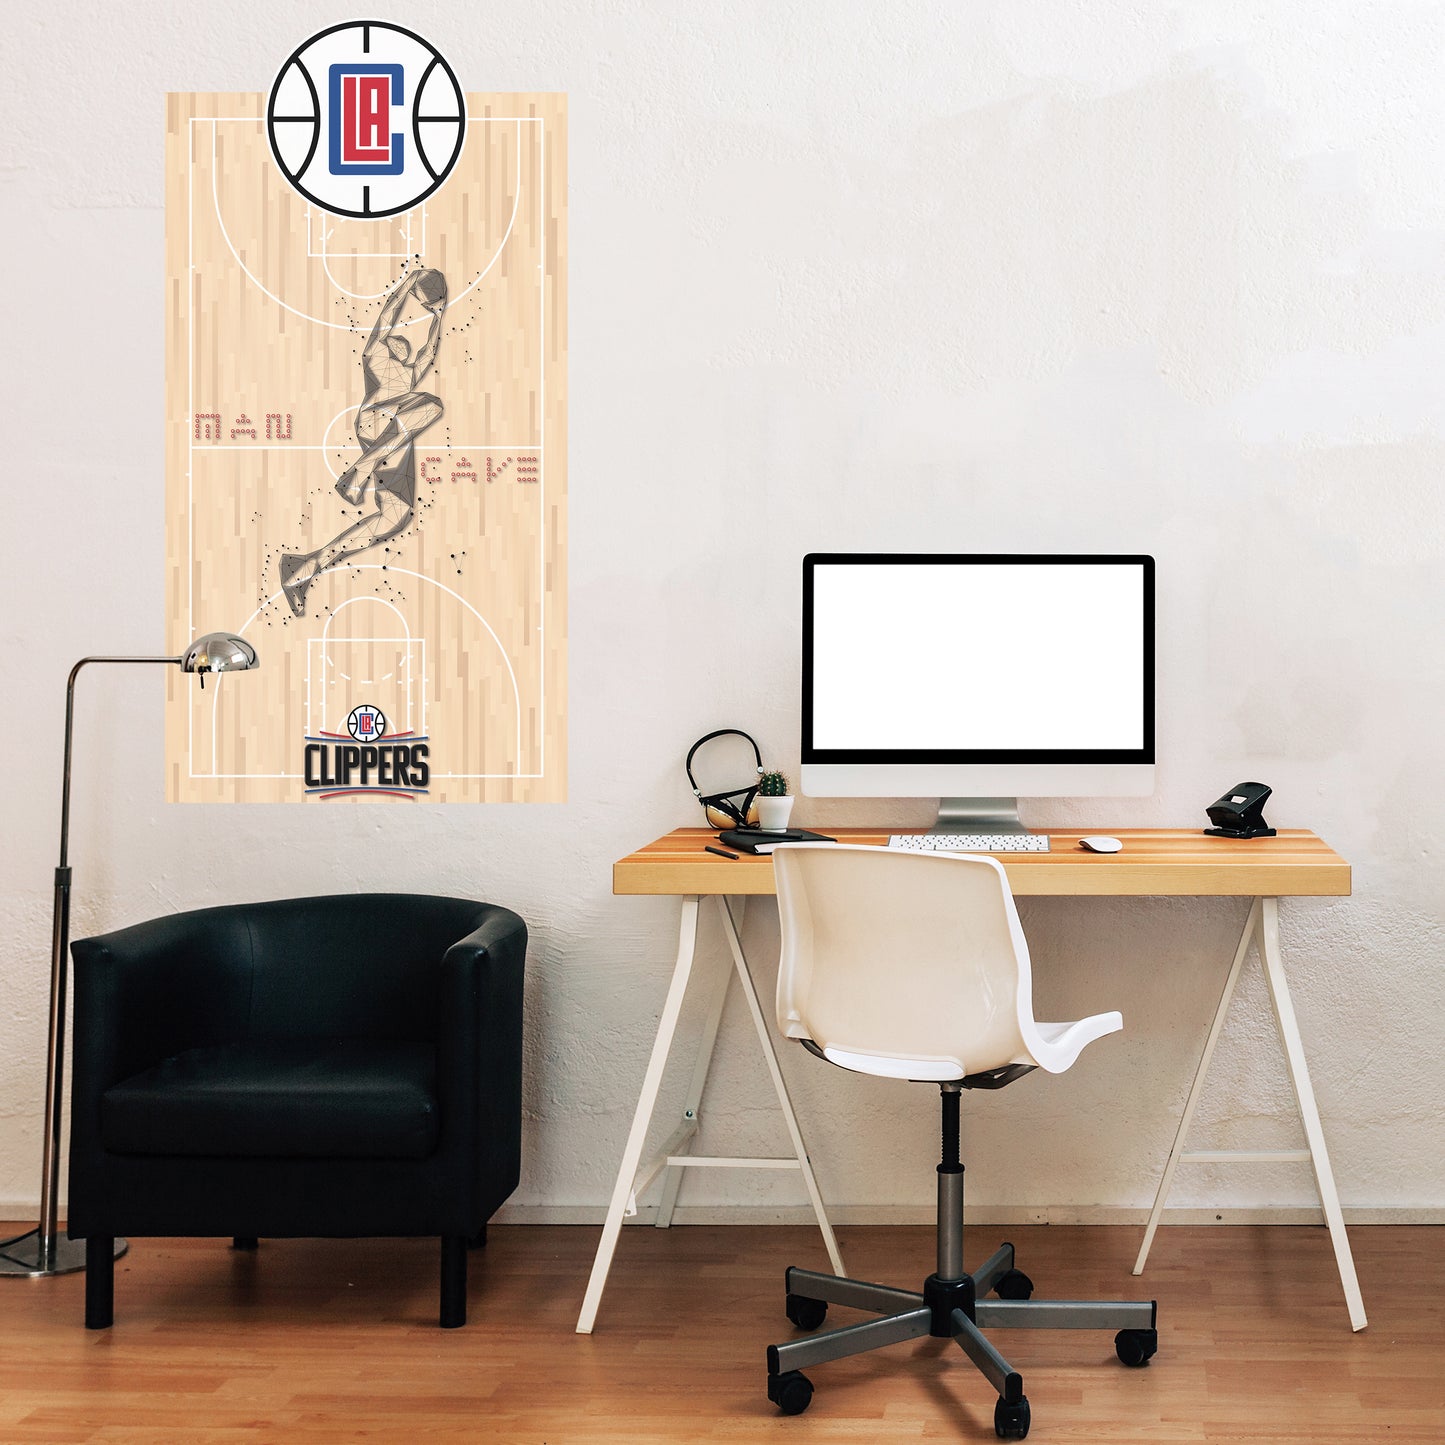 LA Clippers Man Cave Wall Decor Art- 3D Stickers Vinyl - 2 - MC030